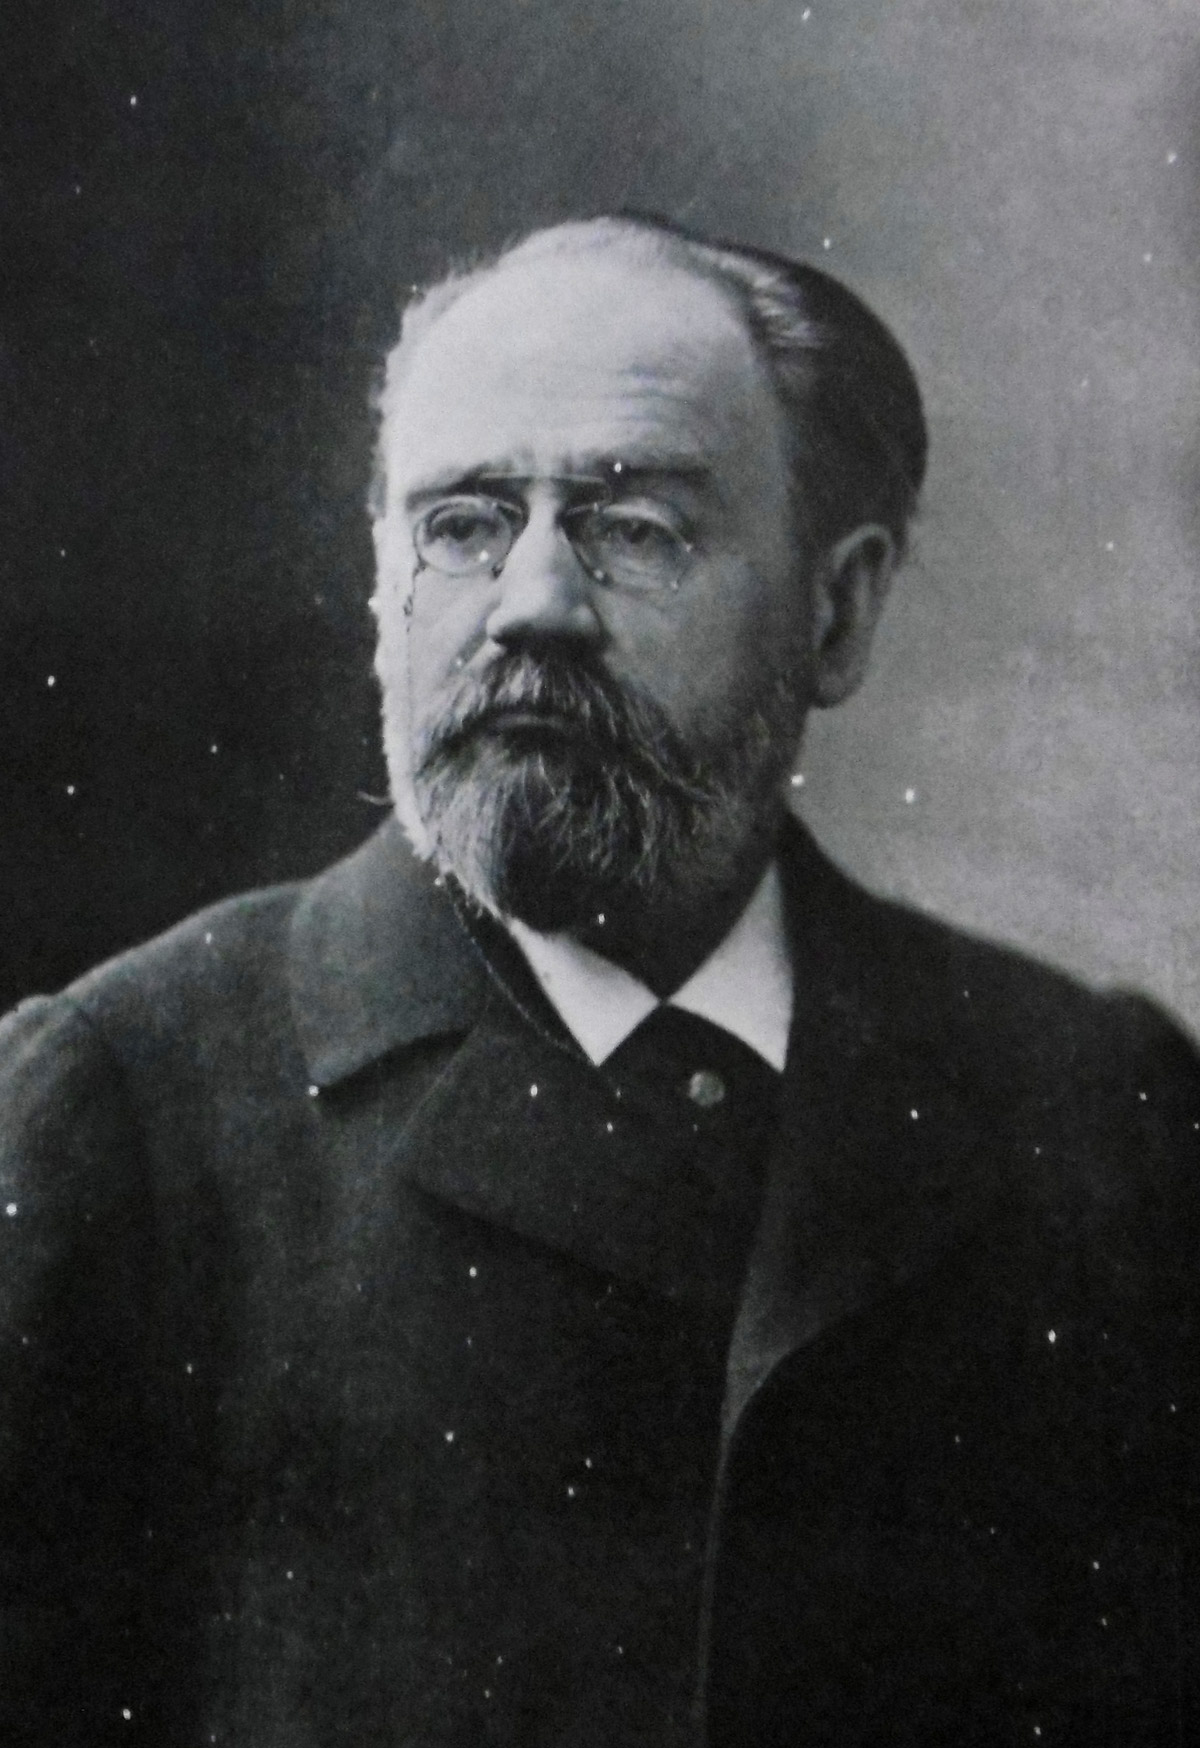 Portrait de Portrait d'Émile Zola in Les défenseurs de la justice : affaire Dreyfus, 1899